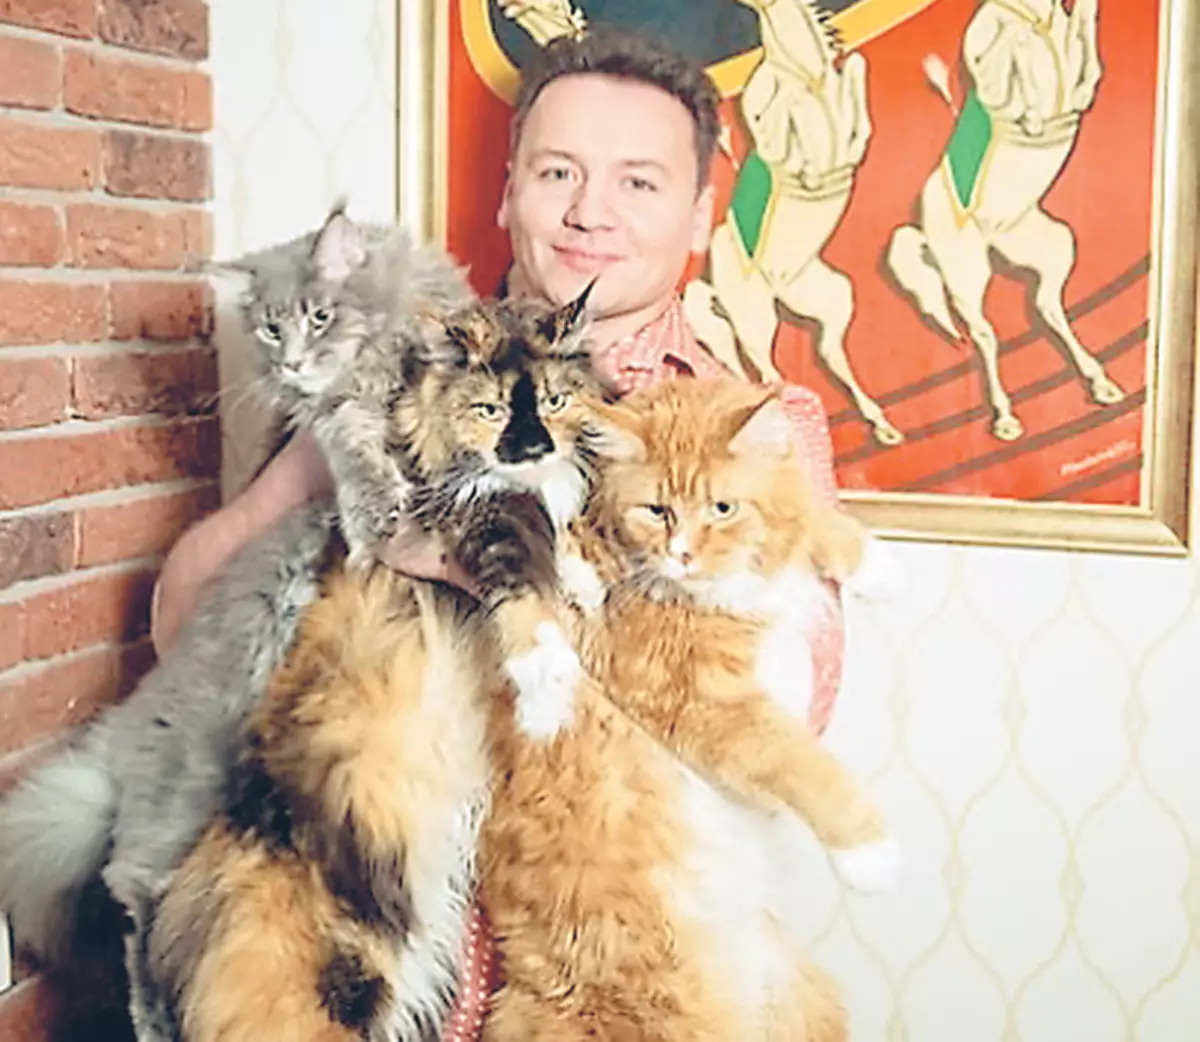 Alexander prostě miluje kočky a udržuje tři maine Kunov jako domácí zvířata: elisha, Walter a Alice